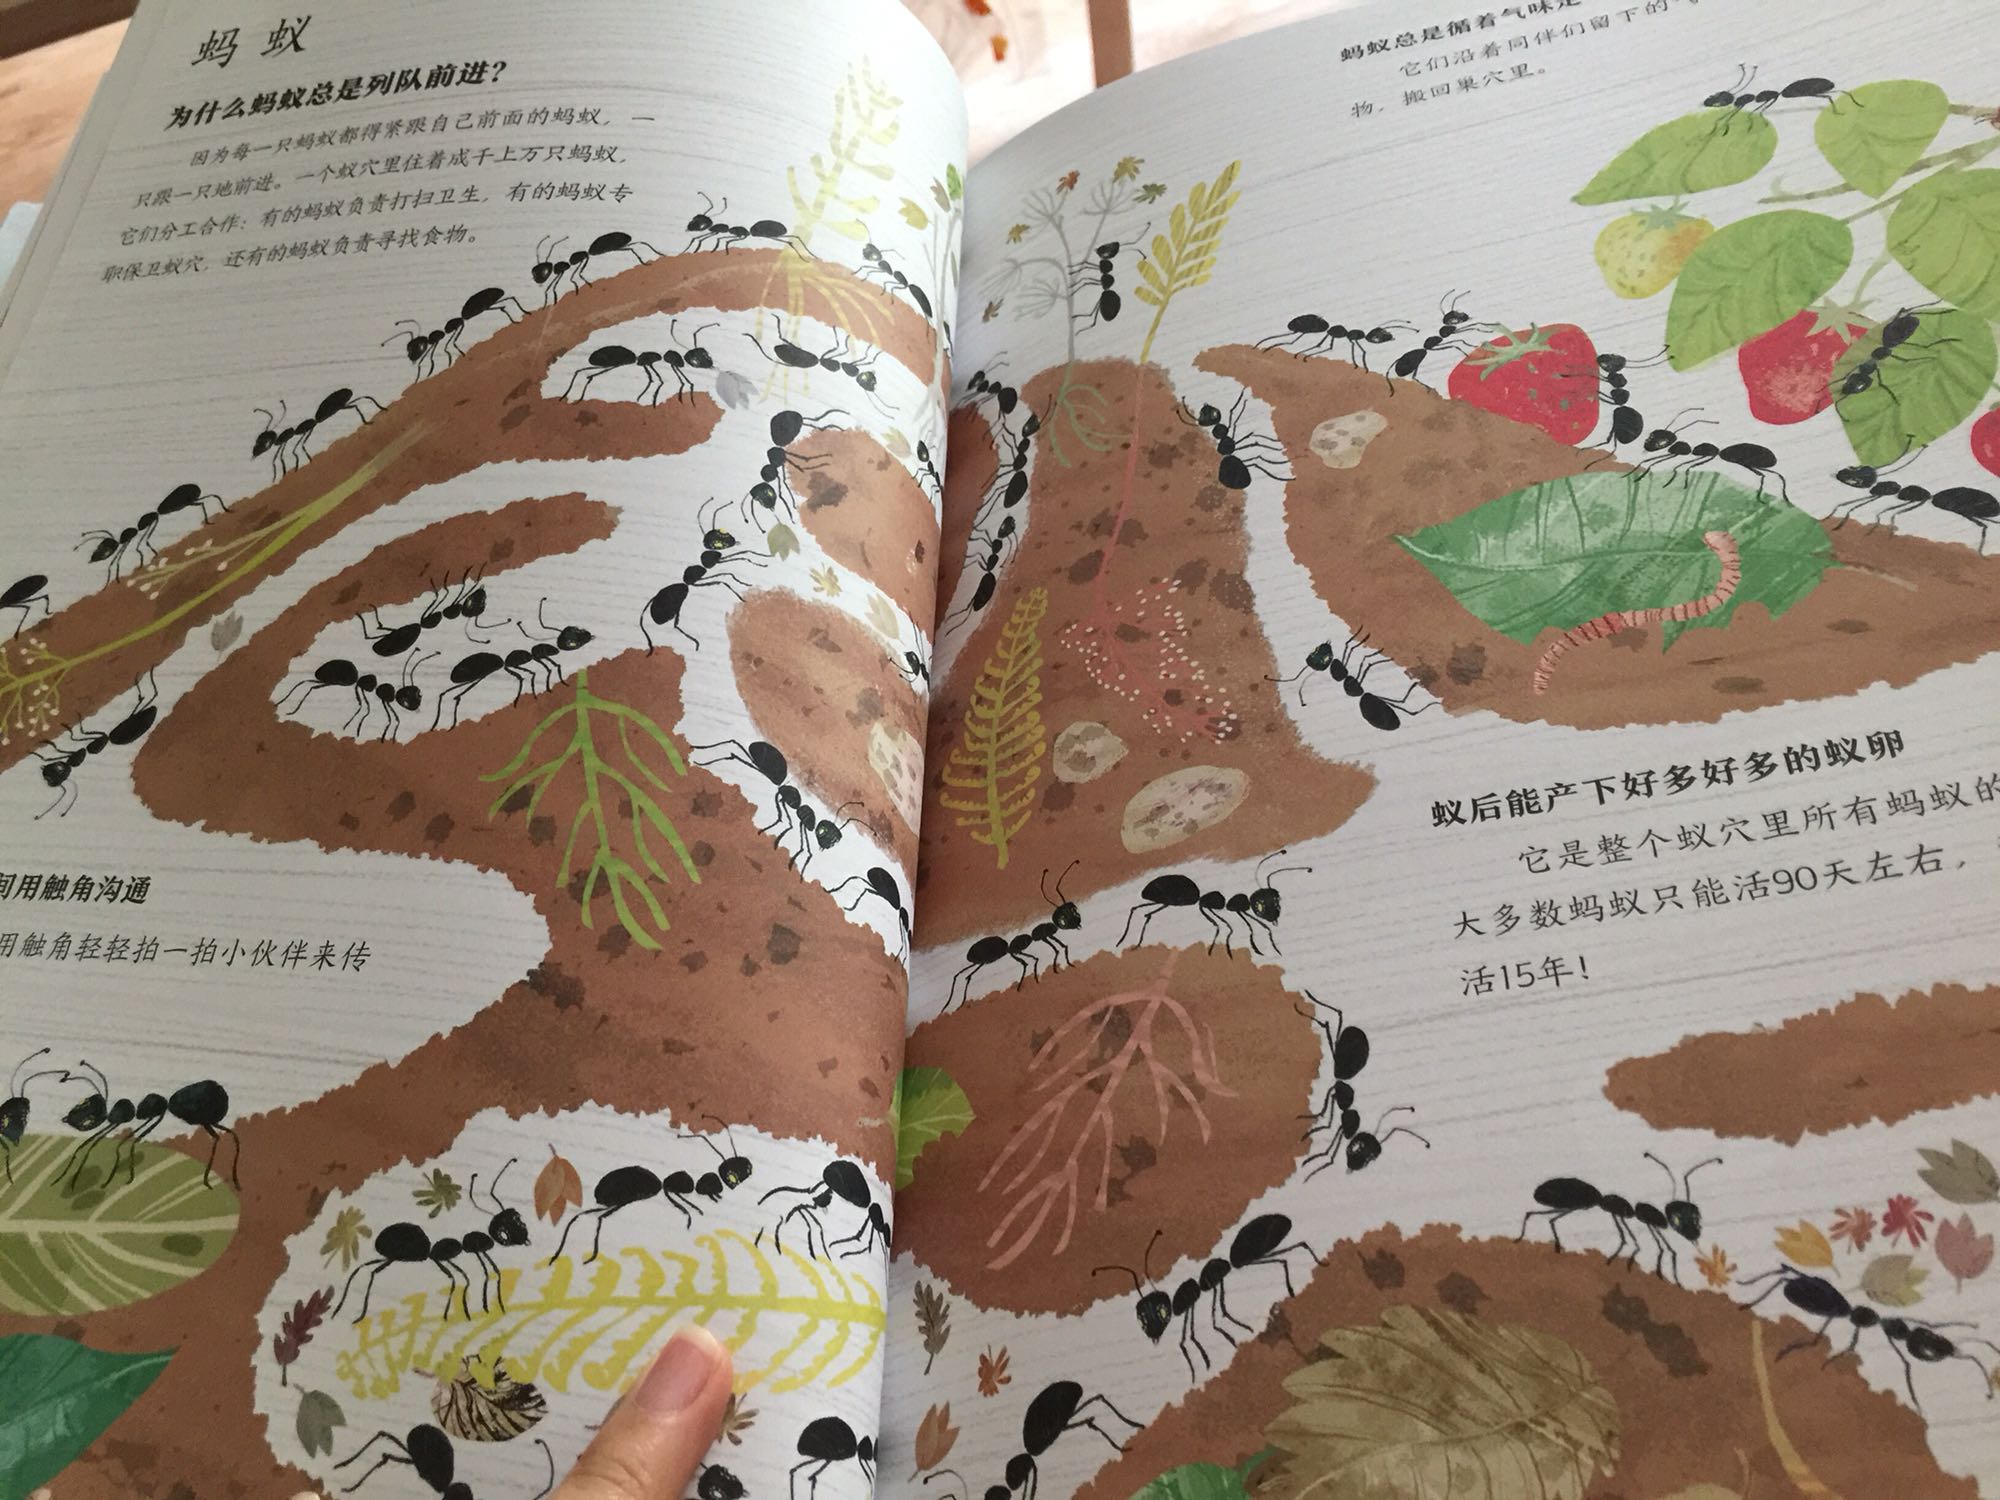 真的很美的书 最近孩子对虫子感兴趣 特意买了这本 风格我很喜欢 自己看了半天 很好